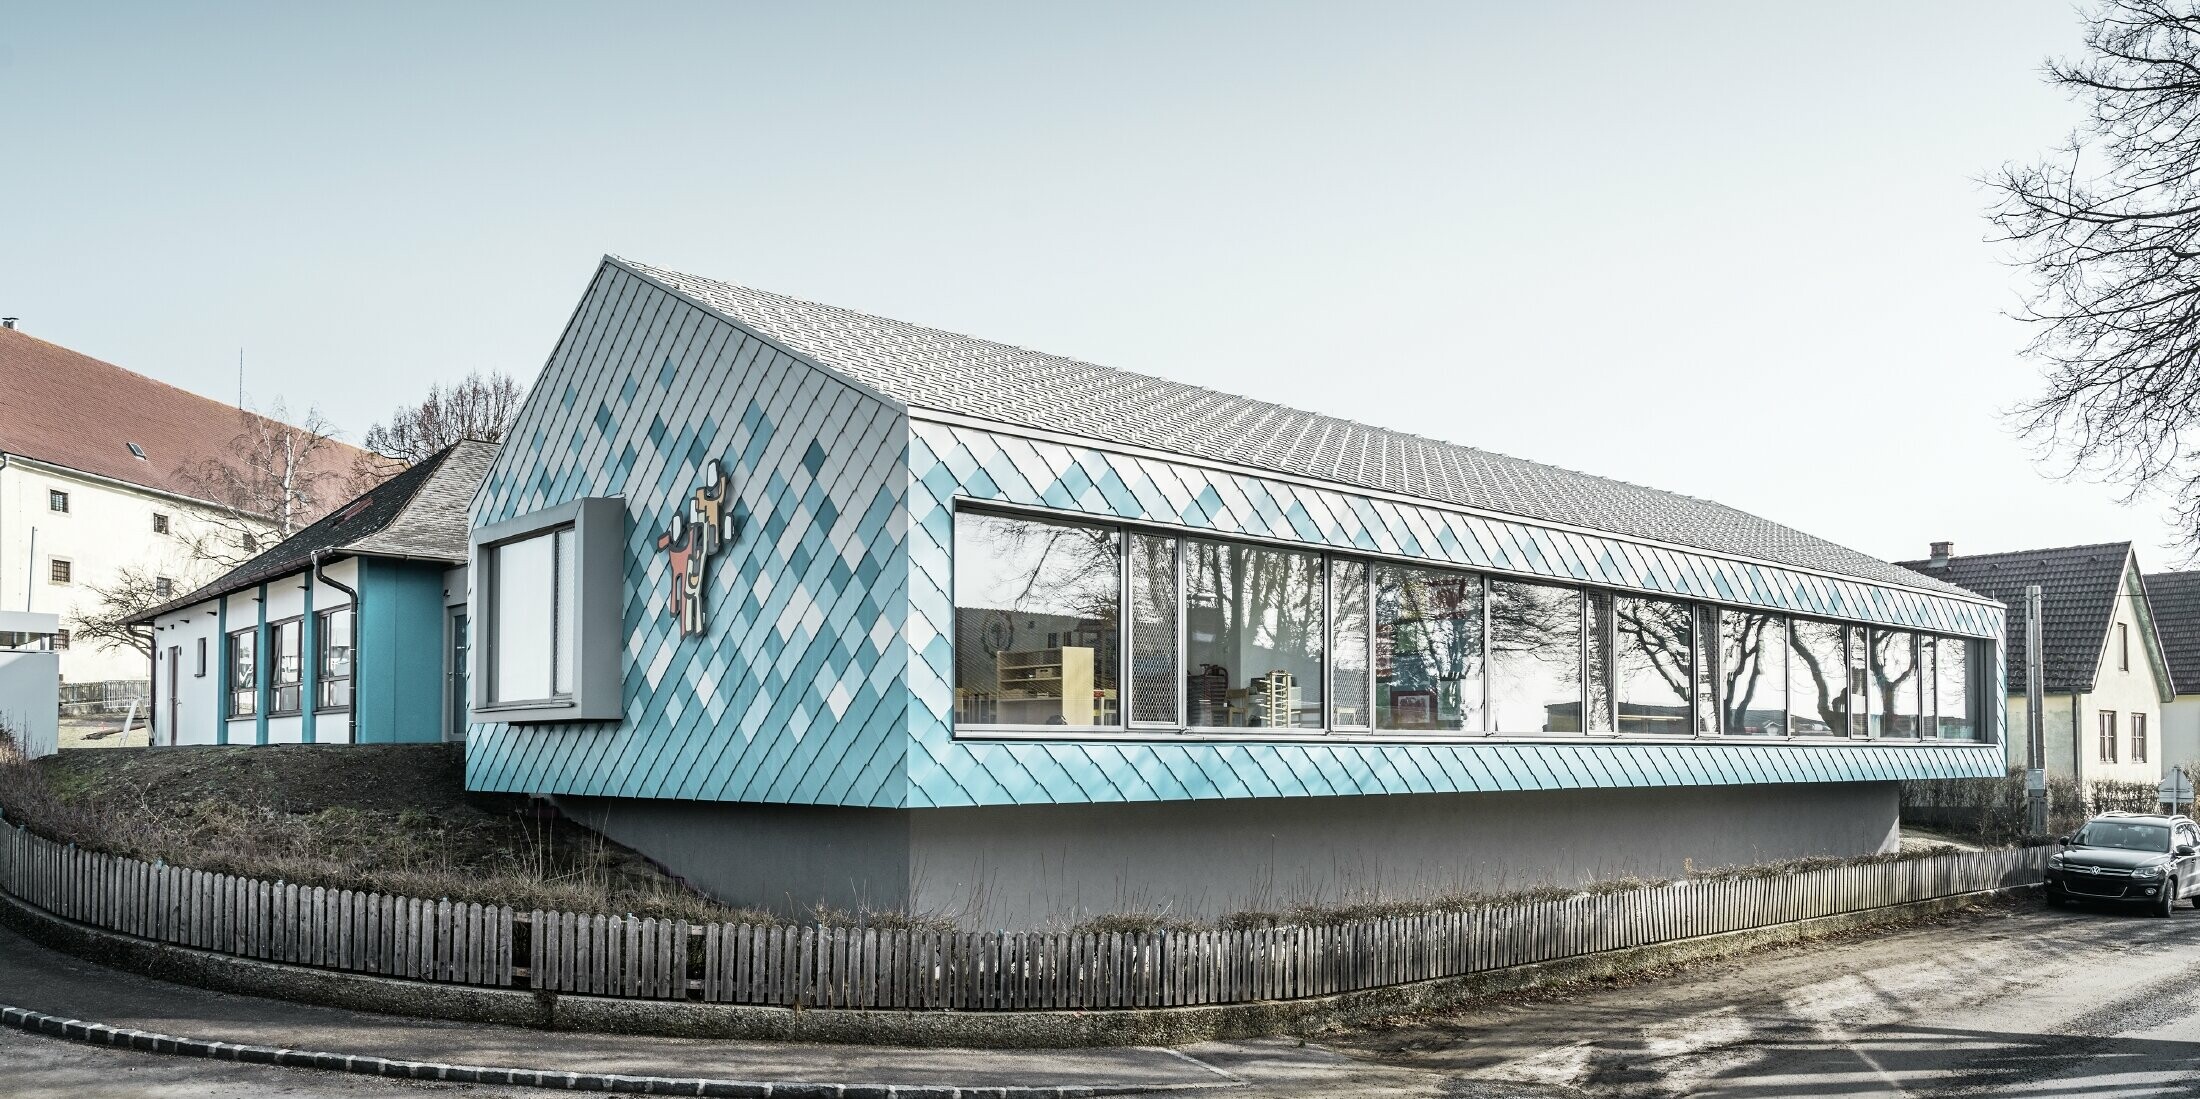 Ved børnehavens facadedesign blev der valgt PREFA-vægrombe i aluminium 29 i farverne ren hvid, lys blå og turkis. Disse blev lagt i et farveforløb (nederst blå, øverst hvid).